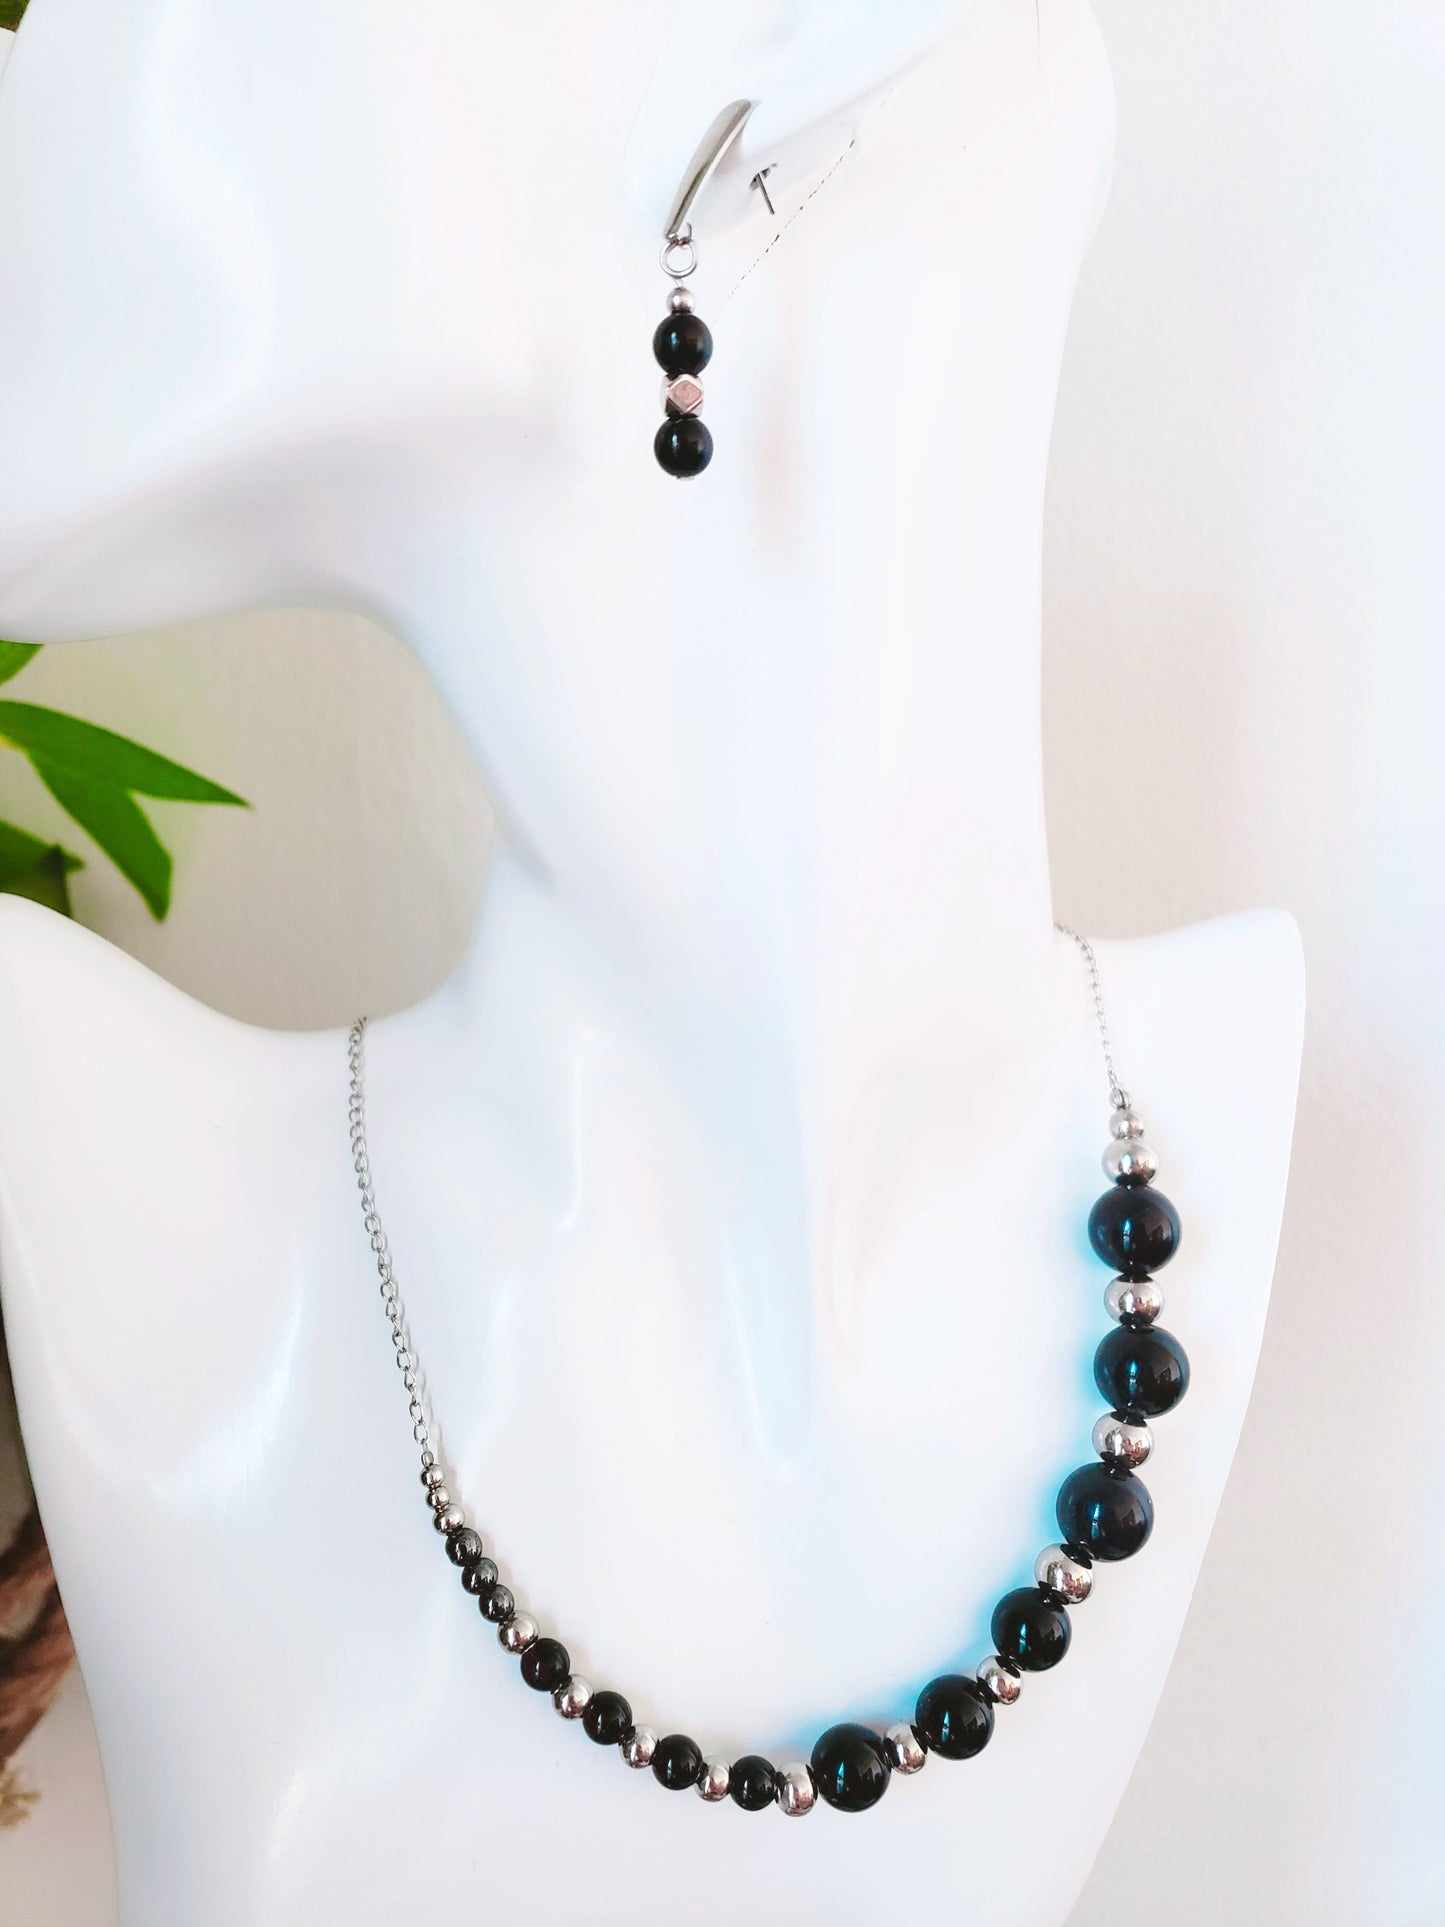 Diseño Unico en Collar y Aretes en Acero inoxidable con hermosas Piedras Ágata Negra